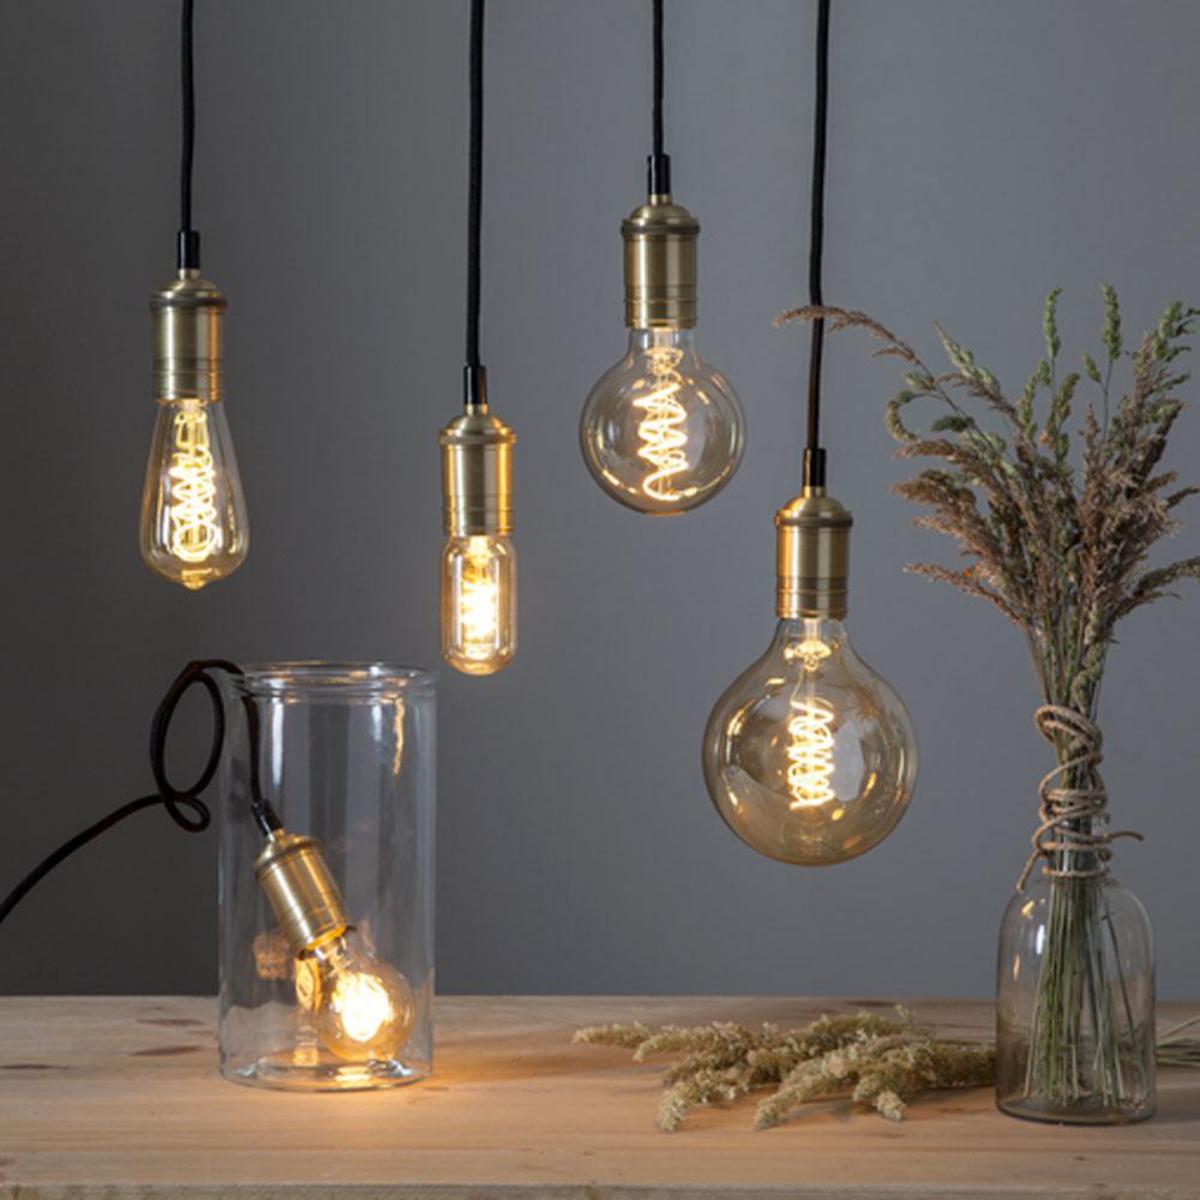 Permanent Milieuactivist Een zin Decoratie lampjes kopen bij dé verlichting specialist | Allekabels